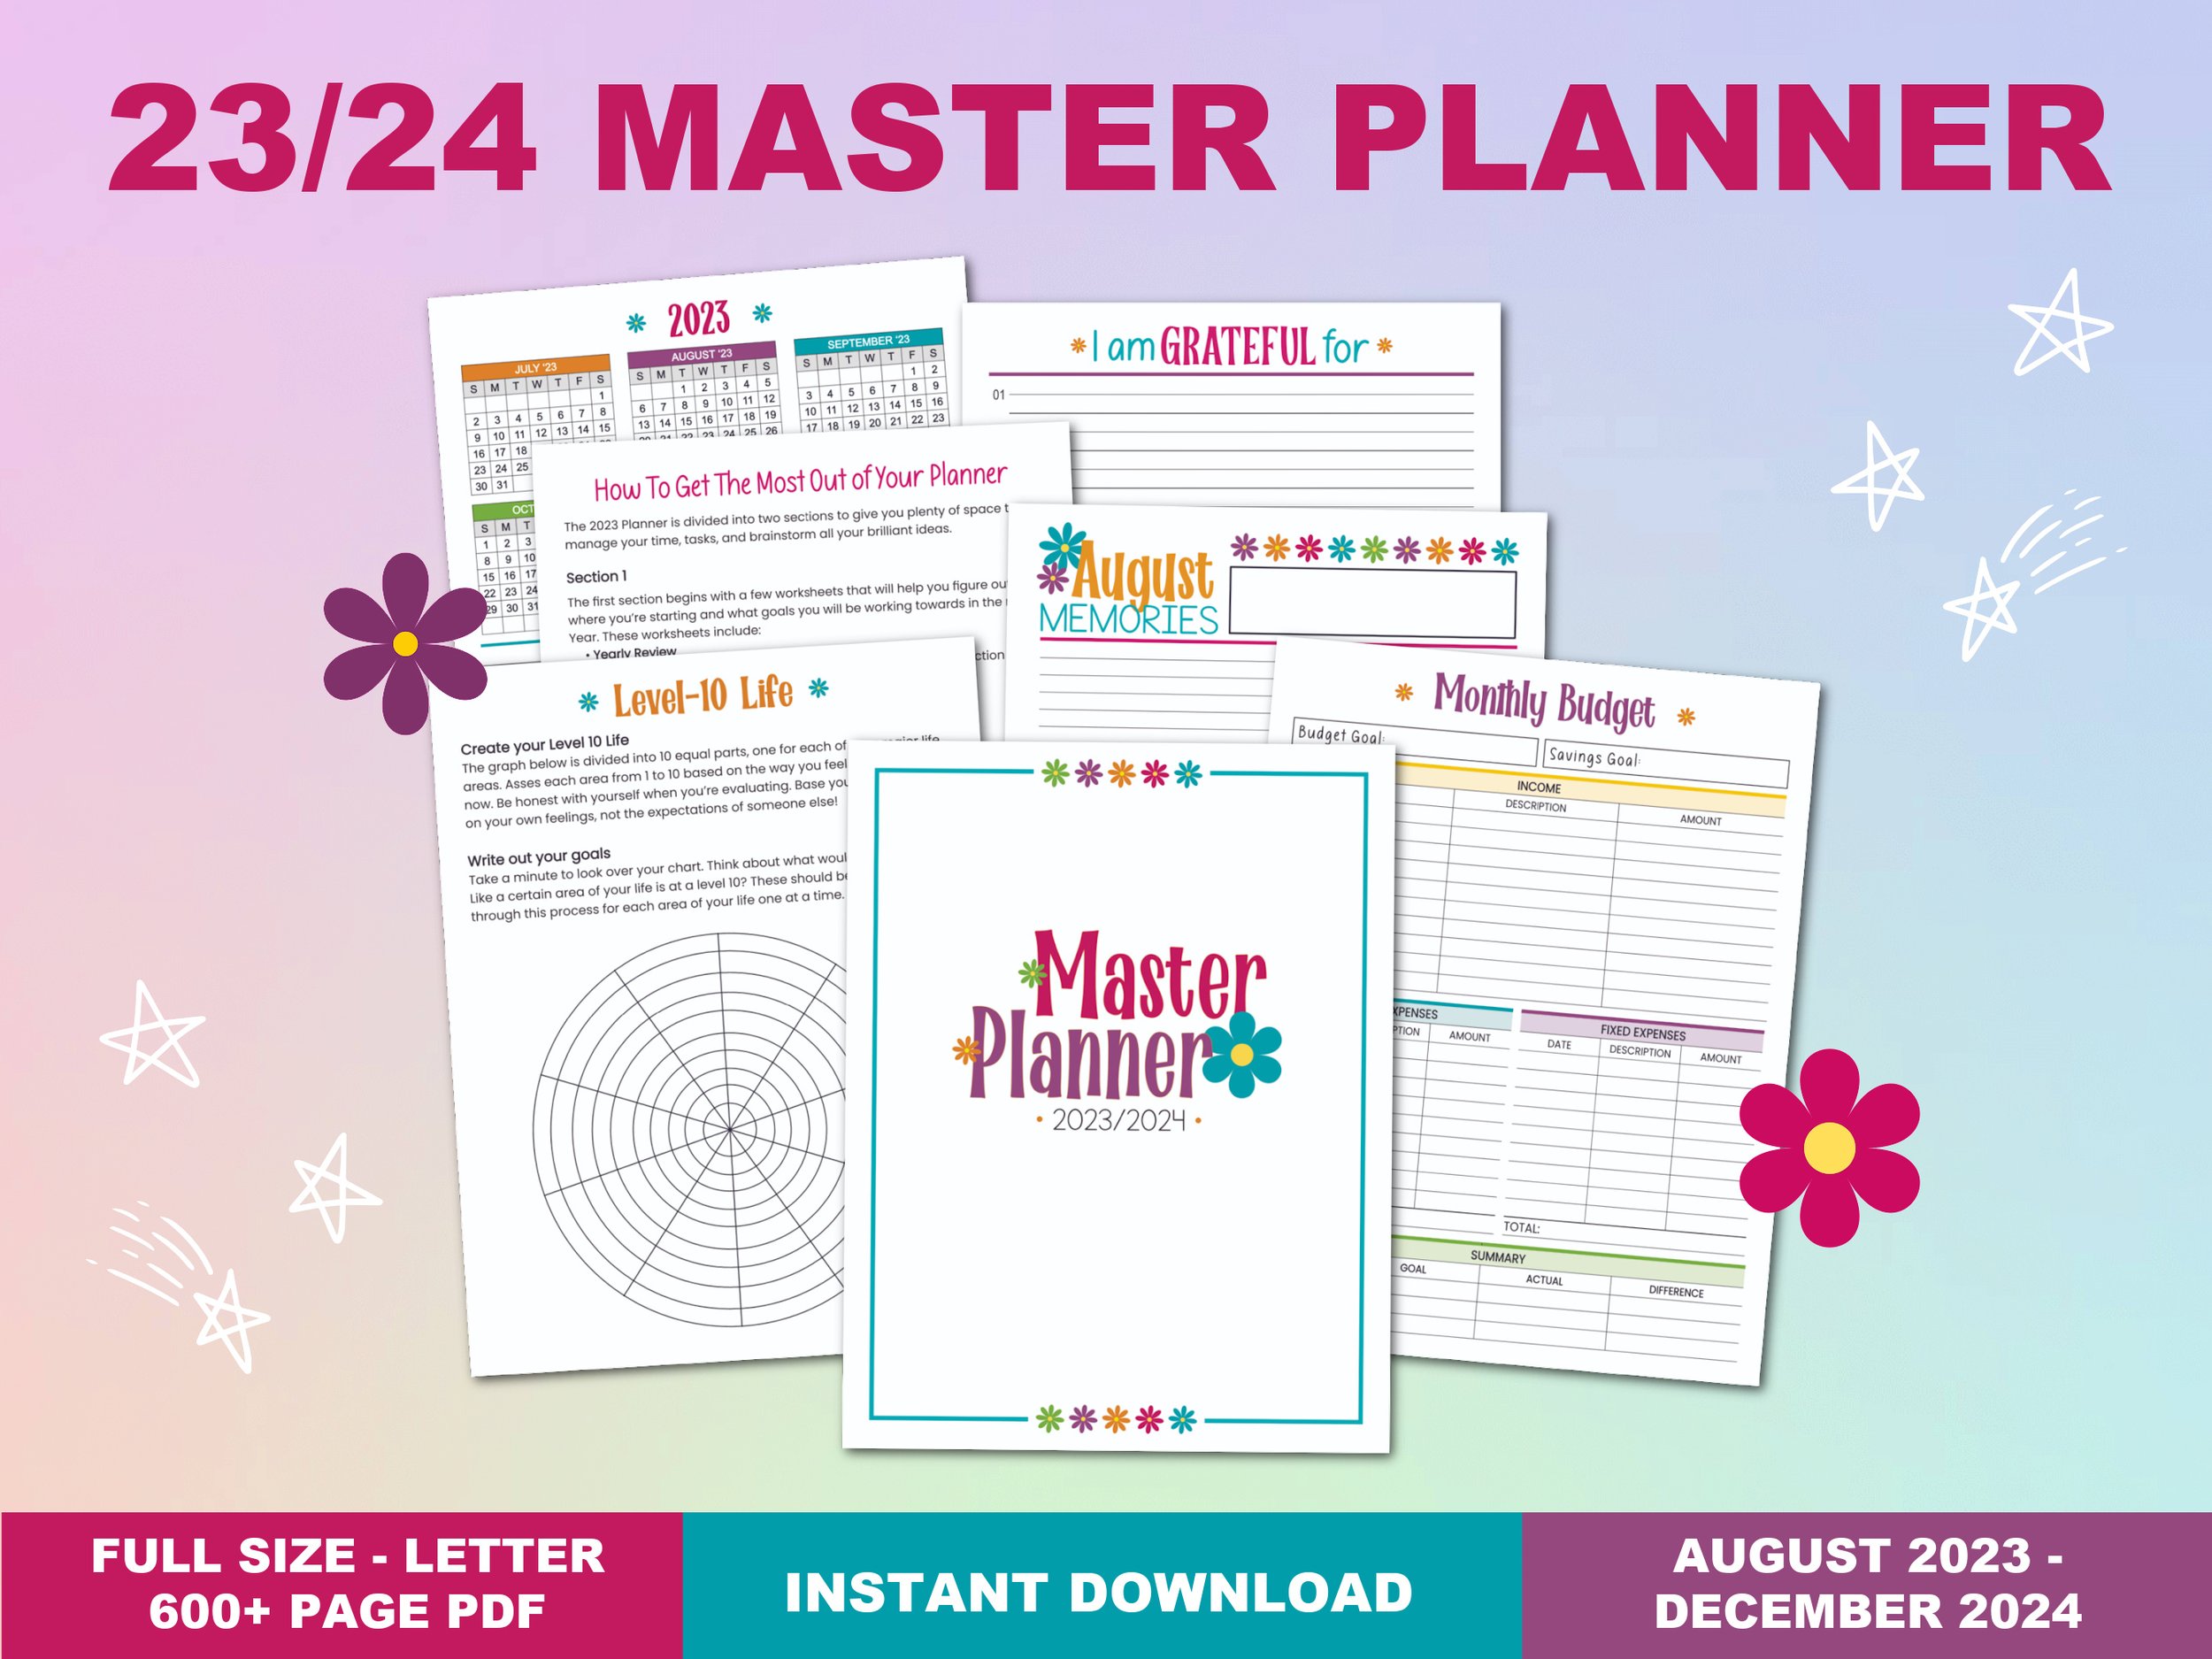 2023_2024 Master Planner -1.jpg